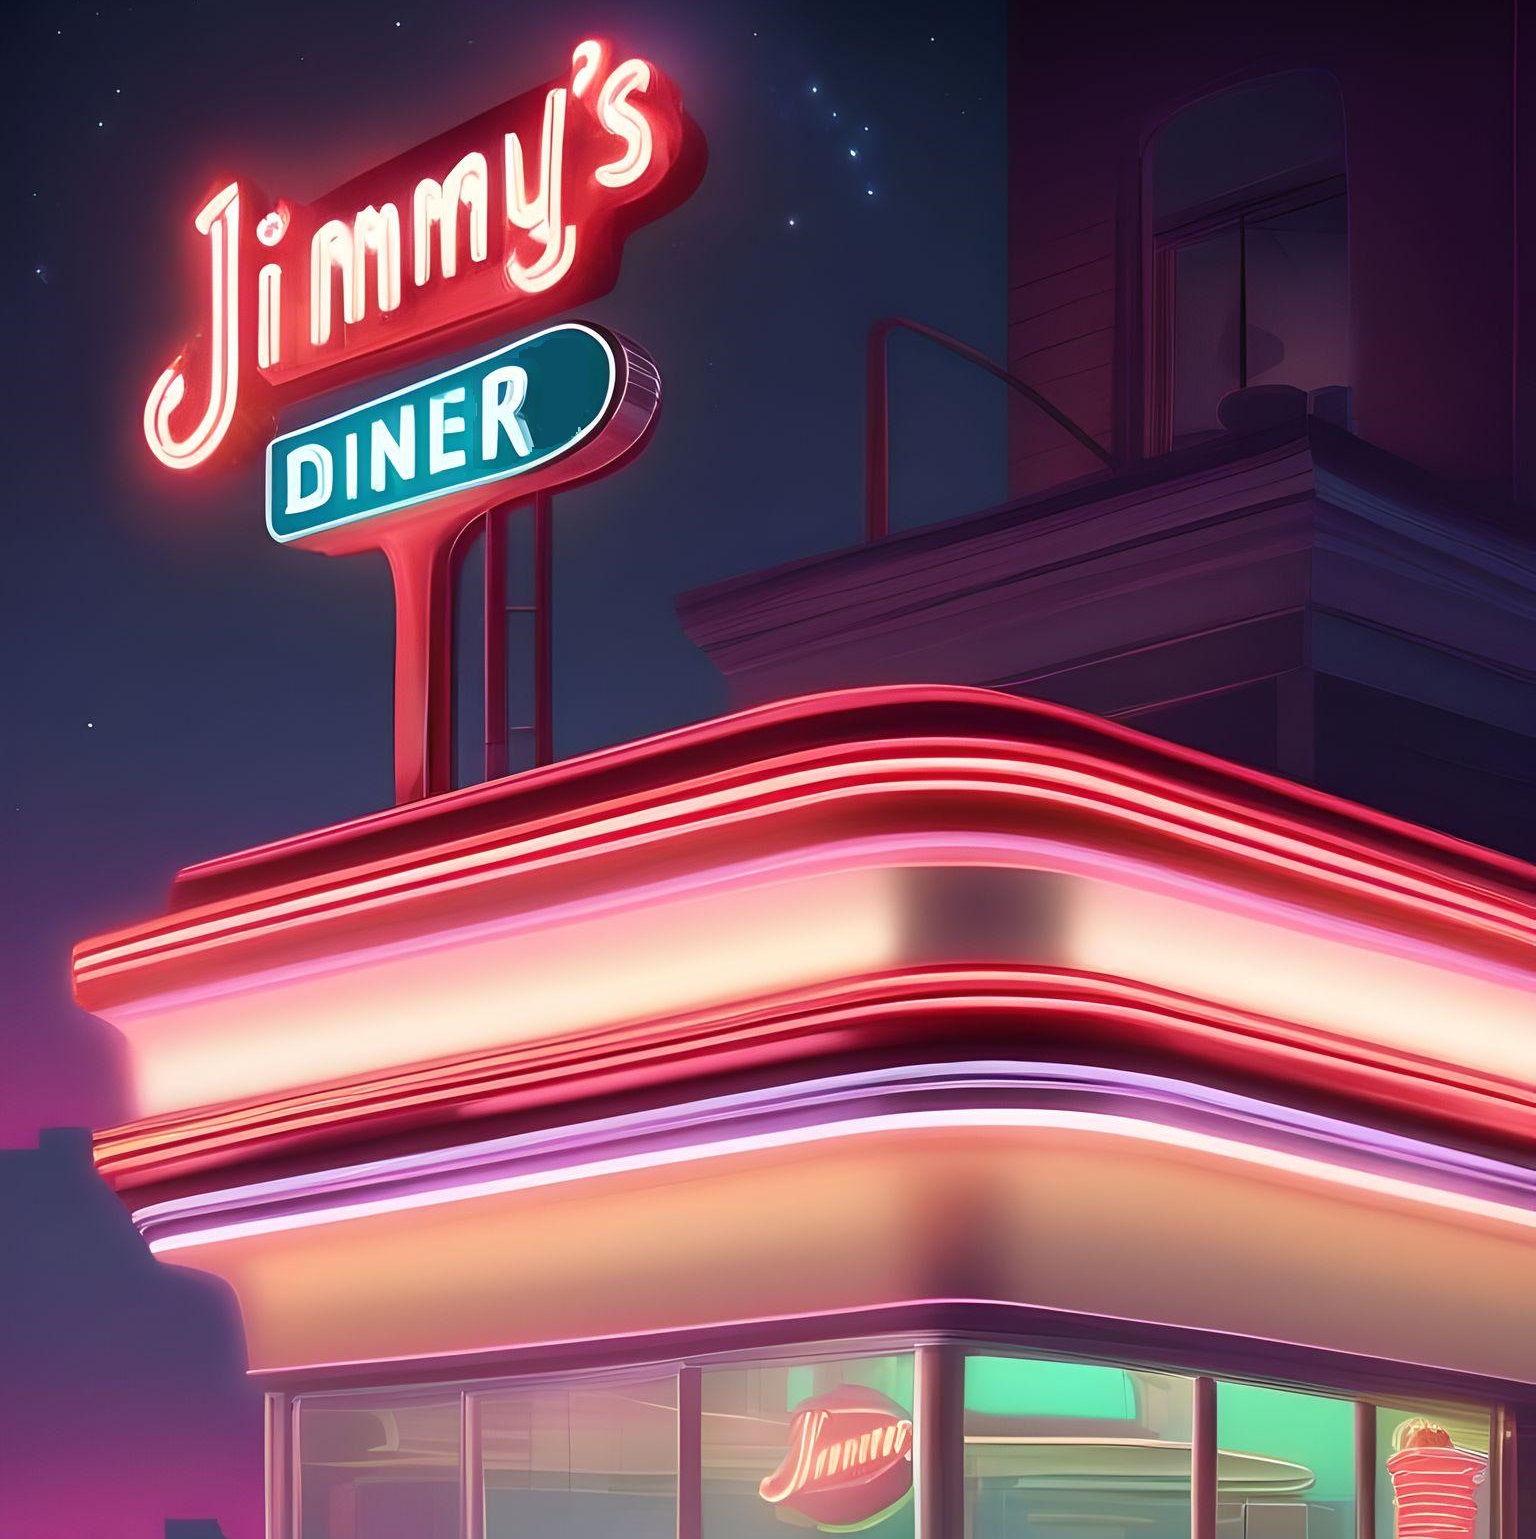 Jimmys_Diner